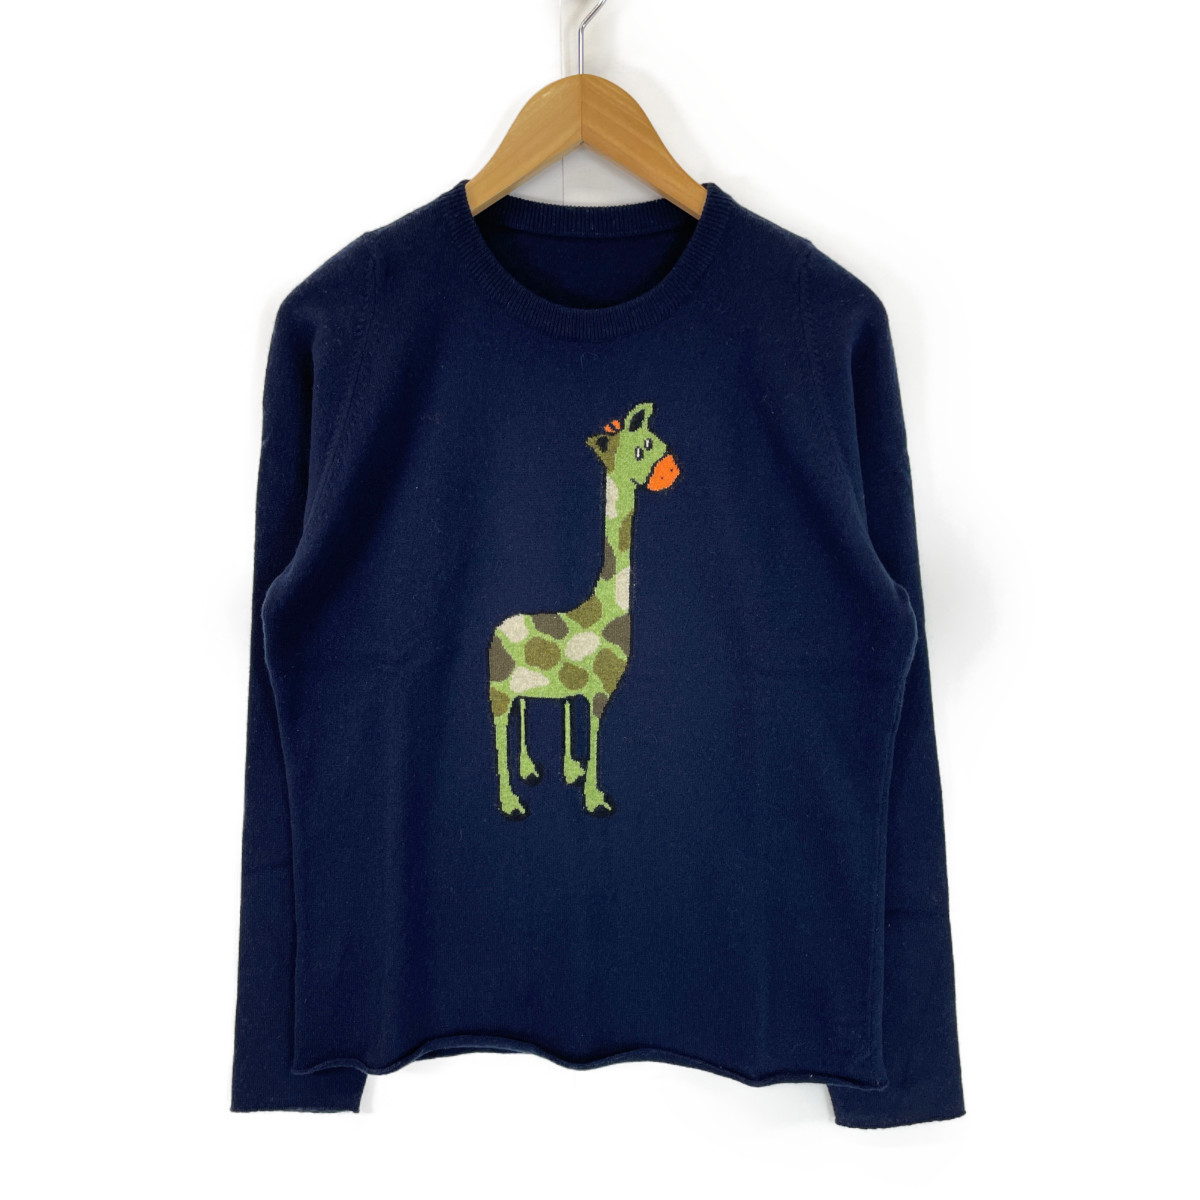  beautiful goods / domestic regular lucien pellat-finet Lucien Pellat-Finet cashmere 100% giraffe knitted sweater / tops S navy x green men's 